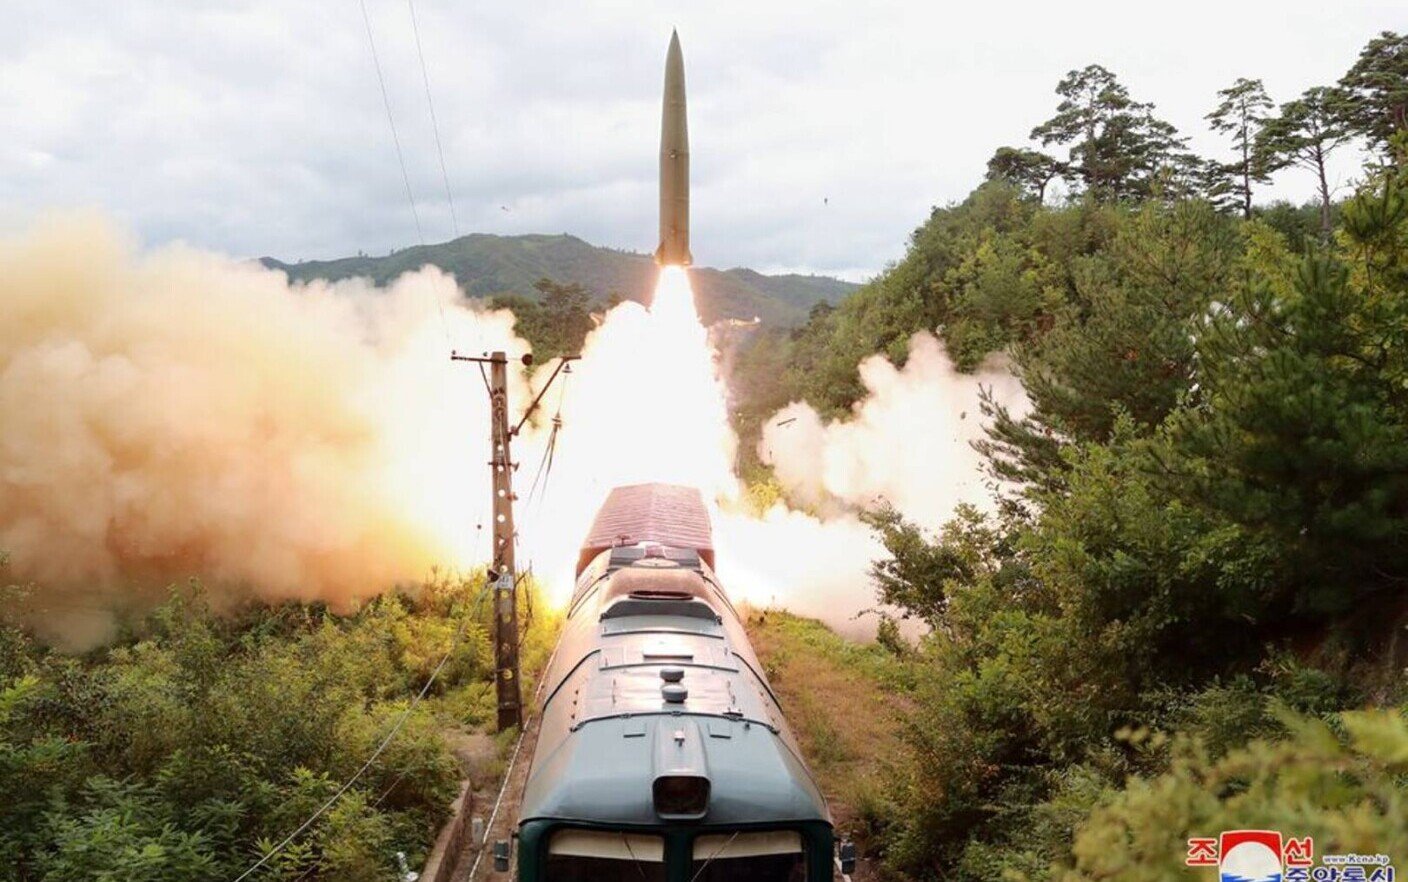 Nicio reacţie din Coreea de Nord: O rachetă a explodat deasupra Phenianului